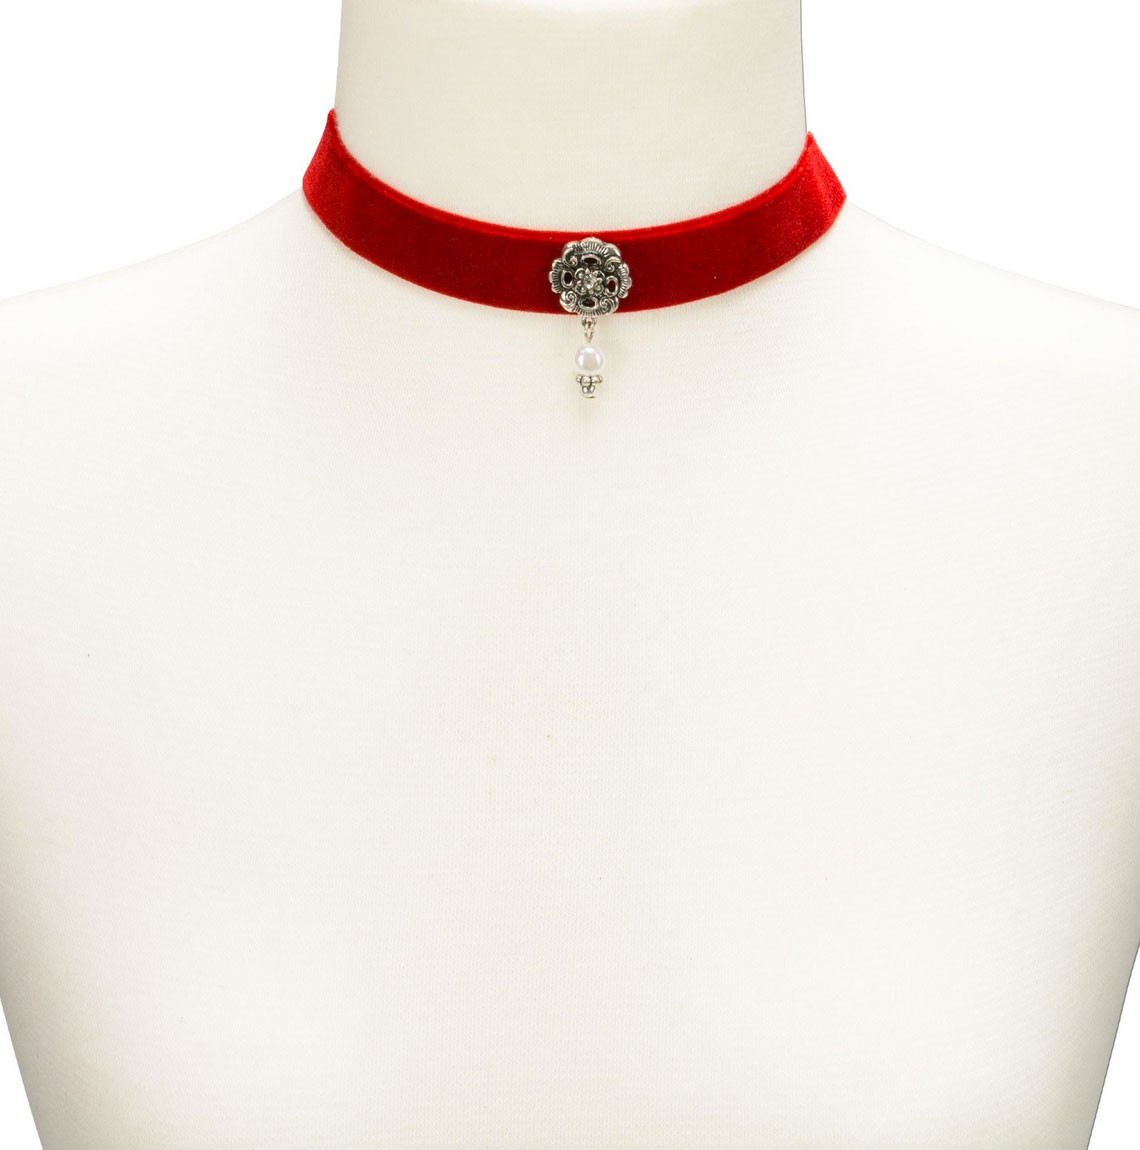 Aperçu: Collier ras de cou avec bijoux pendant rouge